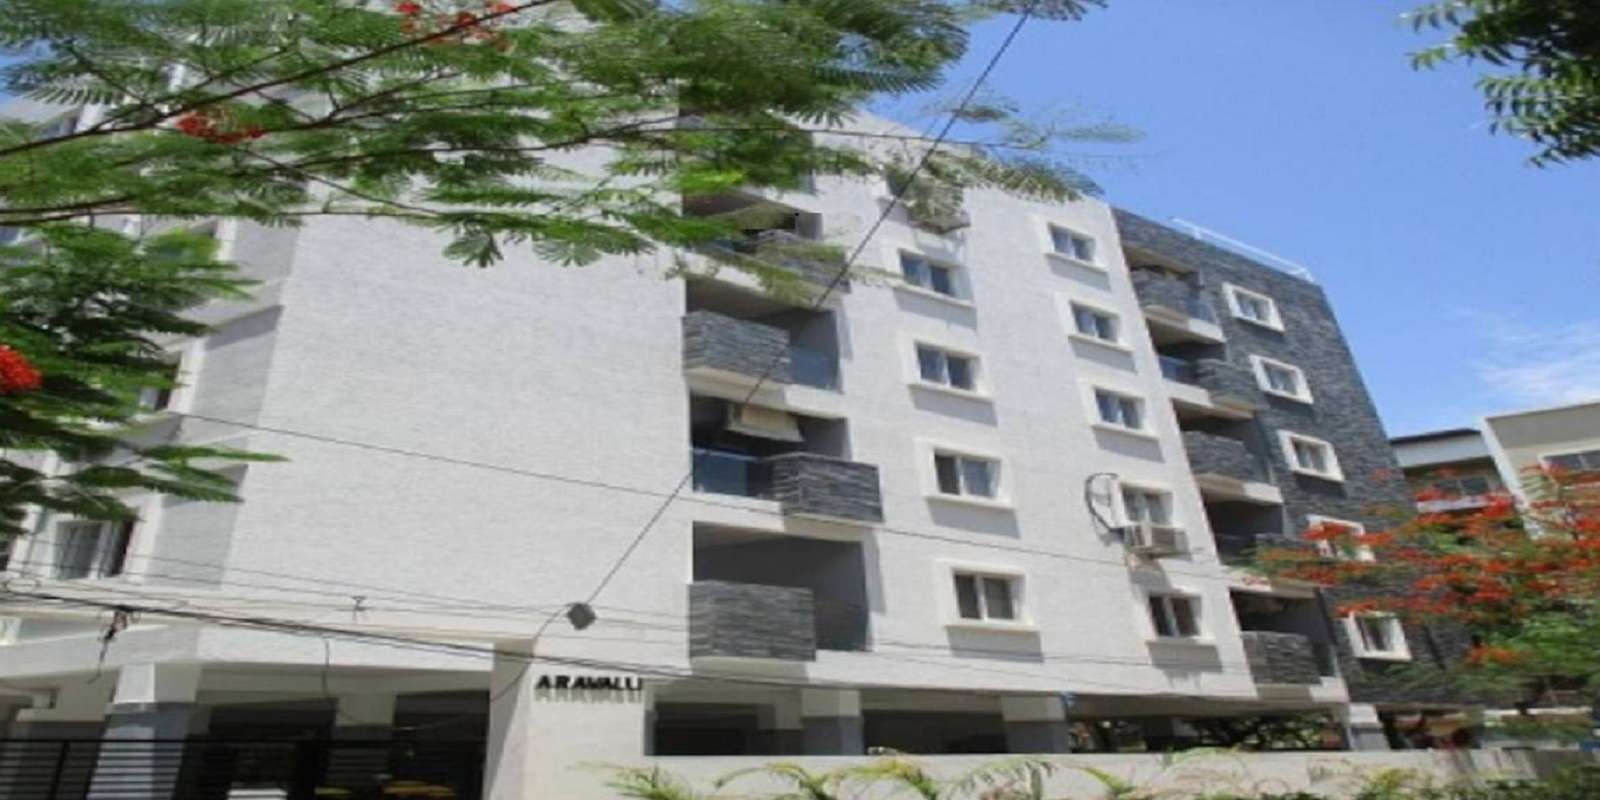 Nilaya Aravalli Apartment Cover Image